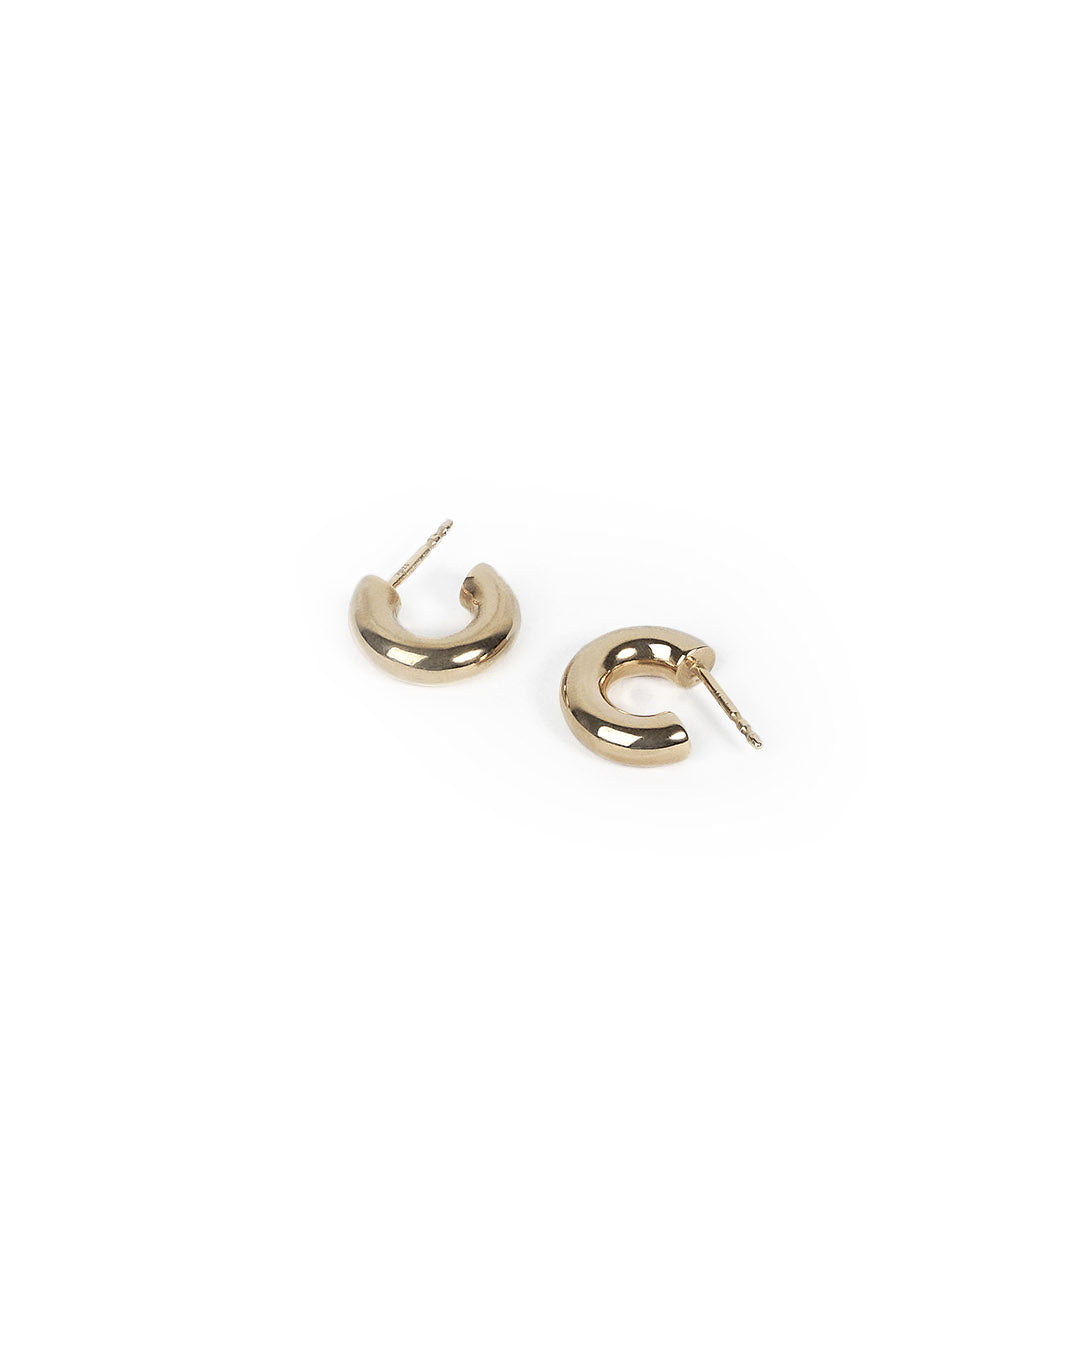 Handmade Simple gilded silver hoops earrings - Bold Form Hoops - NEEO